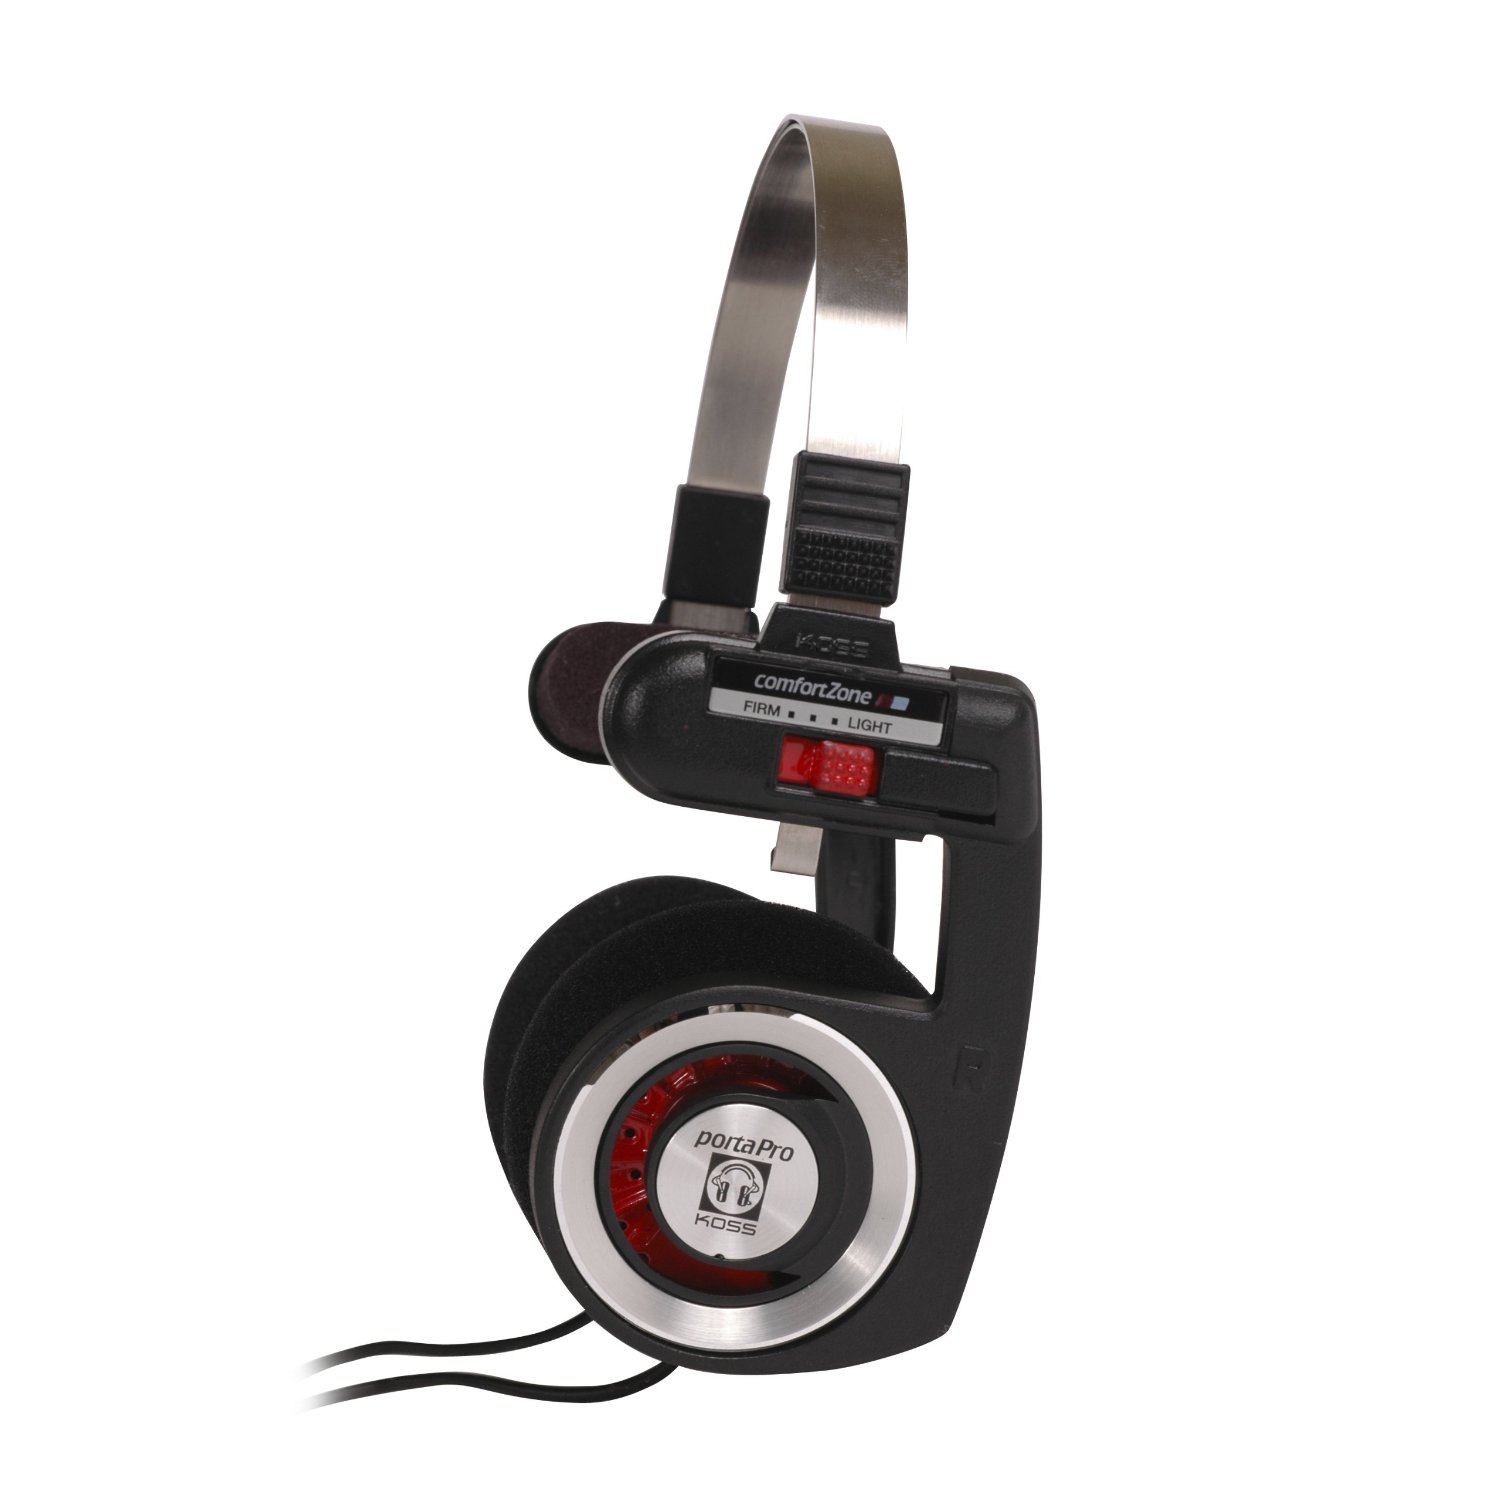 Koss Porta Pro en la oreja los auriculares estéreo - Red Hot